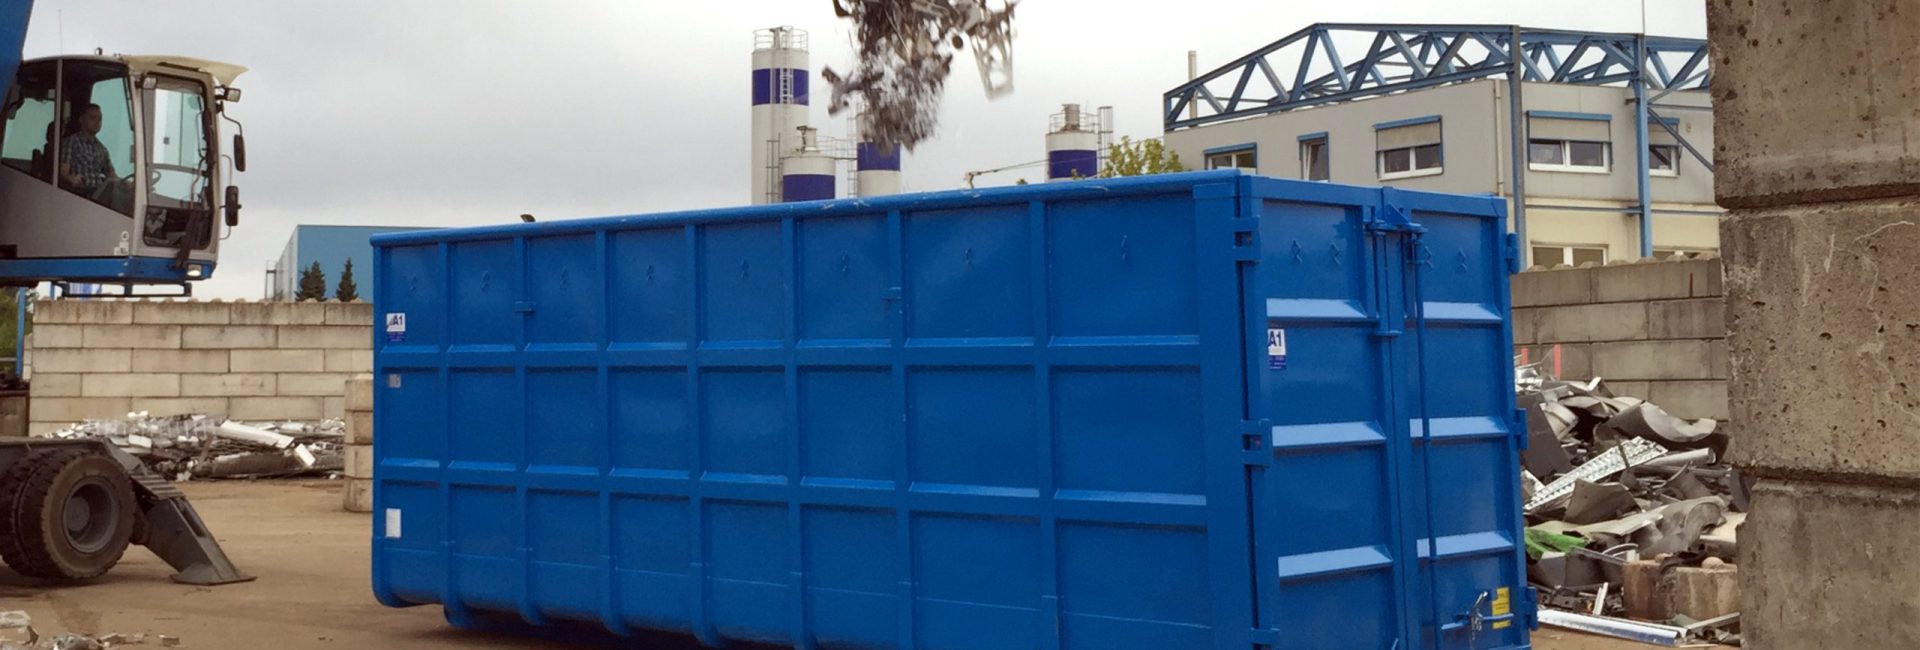 Abrollkipper Absetzkipper Container Behälter Hersteller